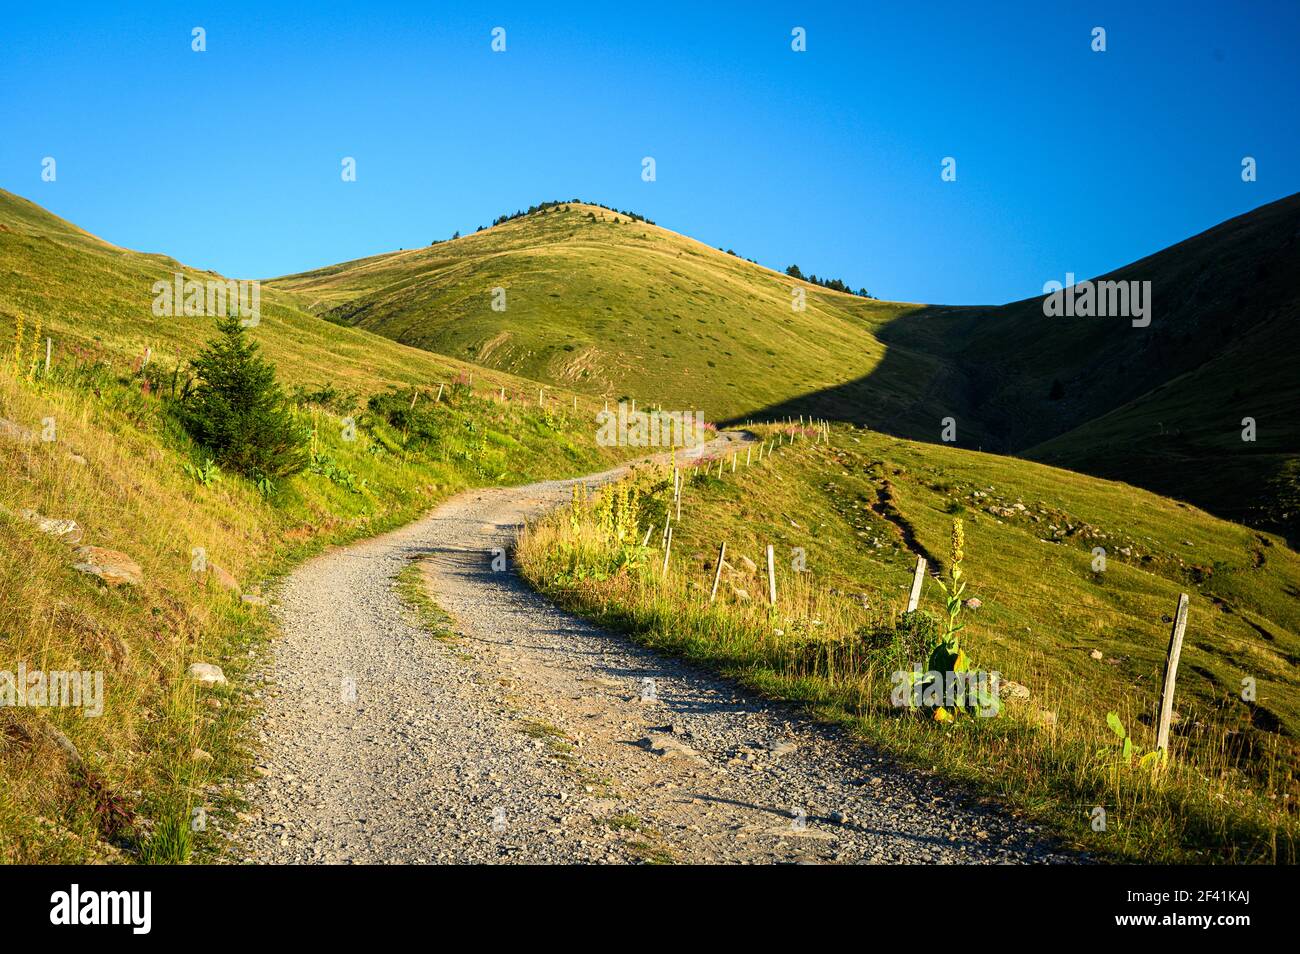 Chemin en pierre montant sur une colline herbeuse sur une belle jour ensoleillé Banque D'Images